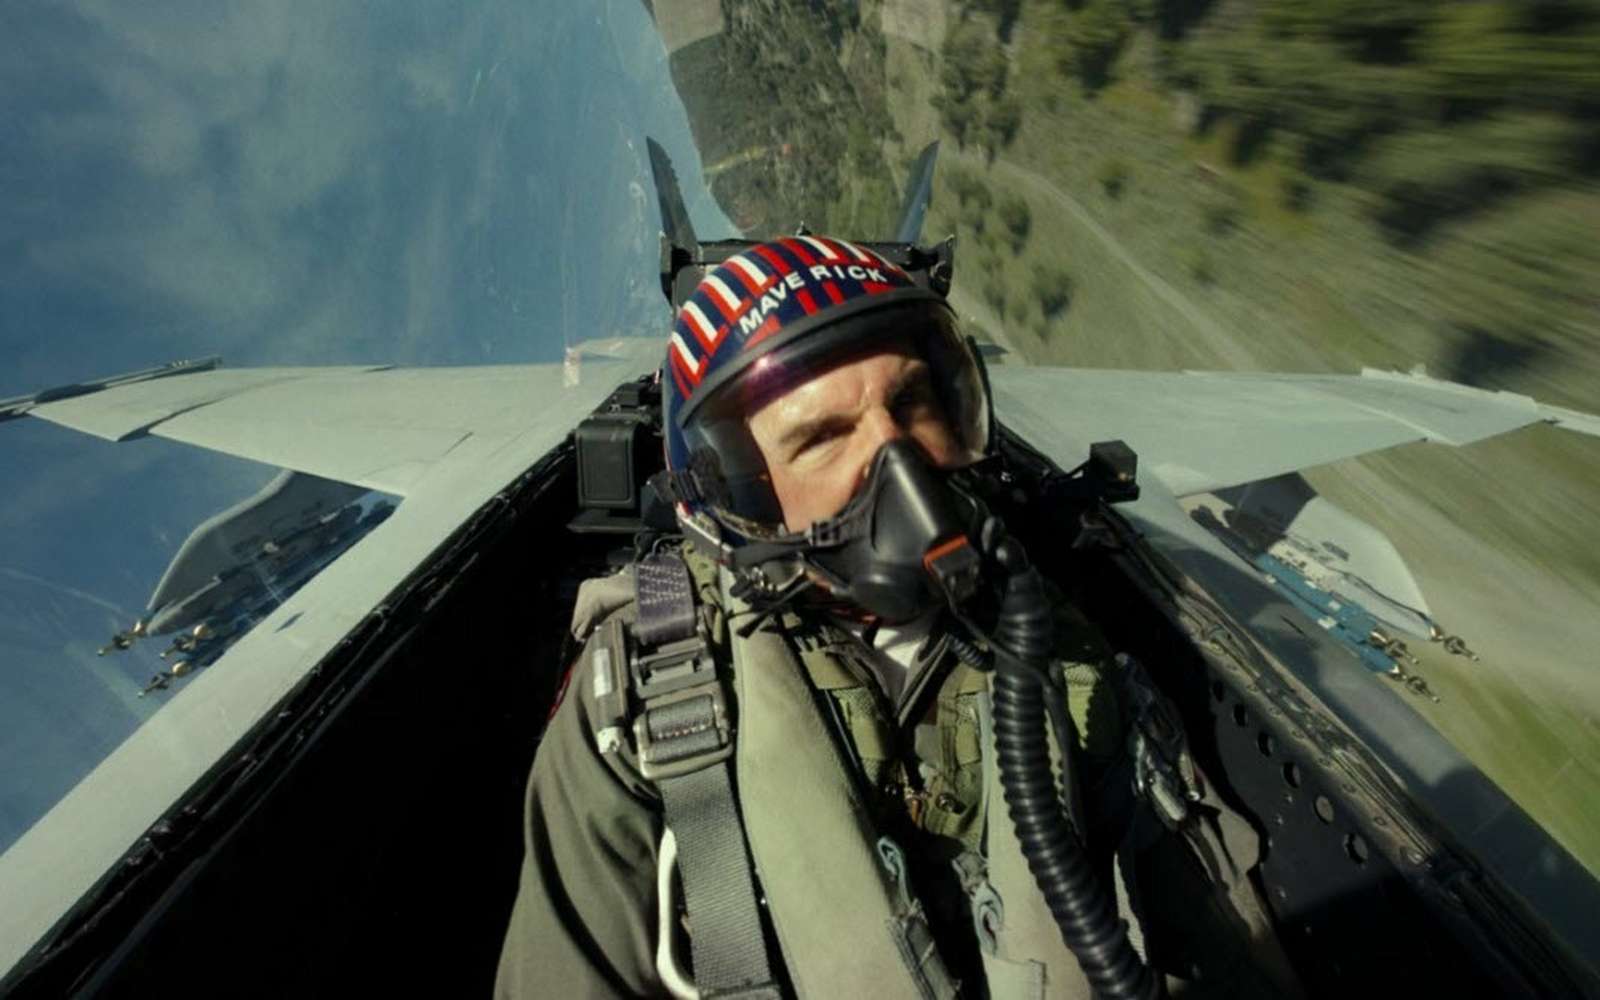 Accélérations et voltige mettent le corps des pilotes à rude épreuve. © Paramount Pictures - Top Gun : Maverick, CC by-sa